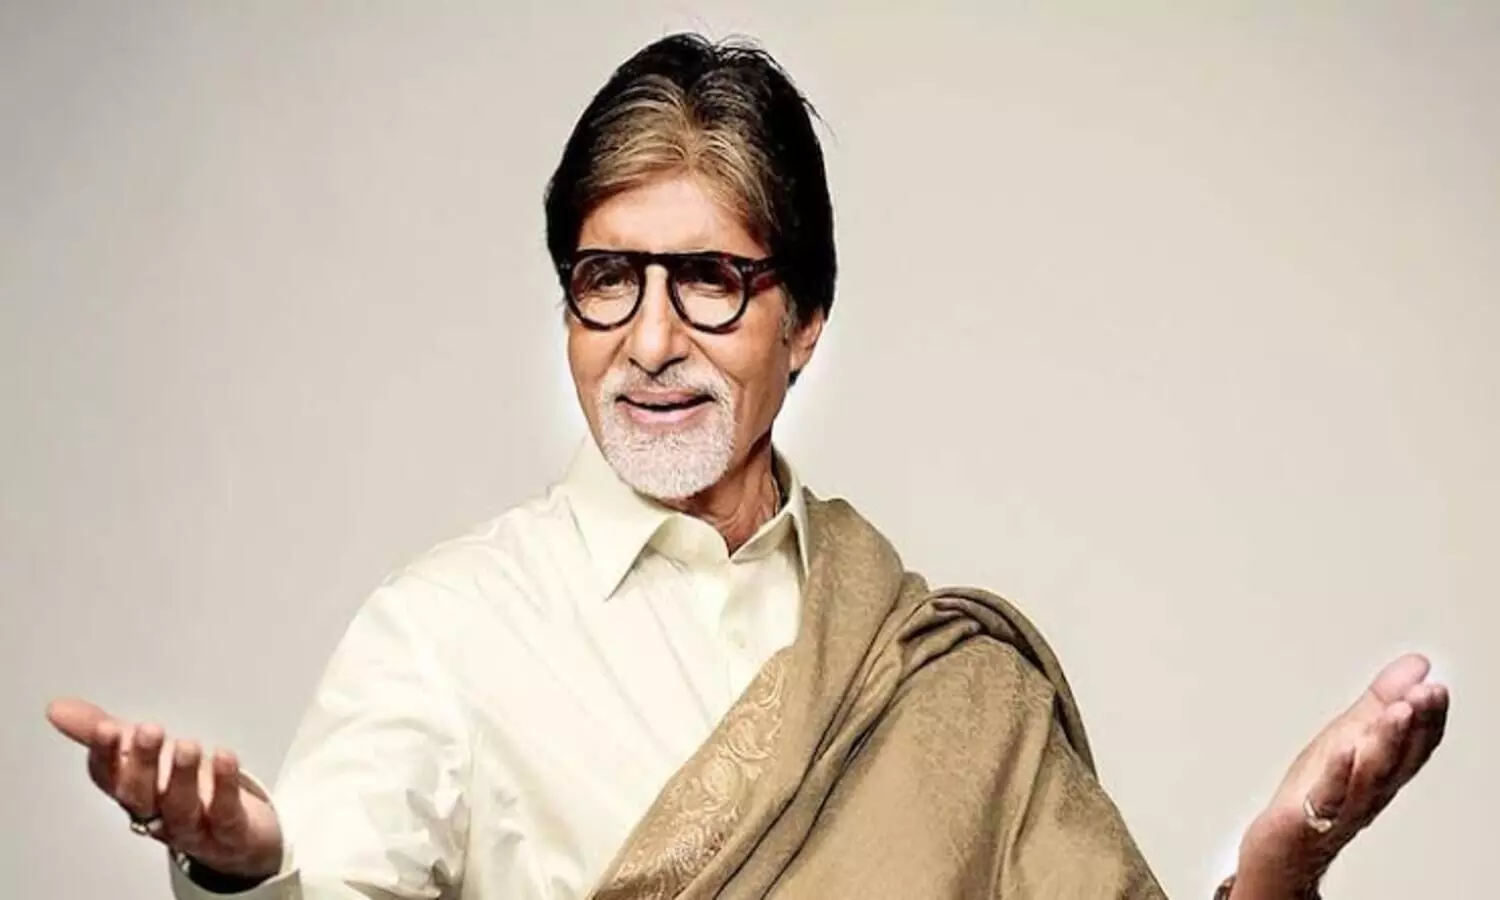 Amitabh Bachchan 7 बंगले और 3500 करोड़ के हैं मालिक, महंगी कार के साथ शानदार घड़ियां और पेंस के भी हैं शौकीन